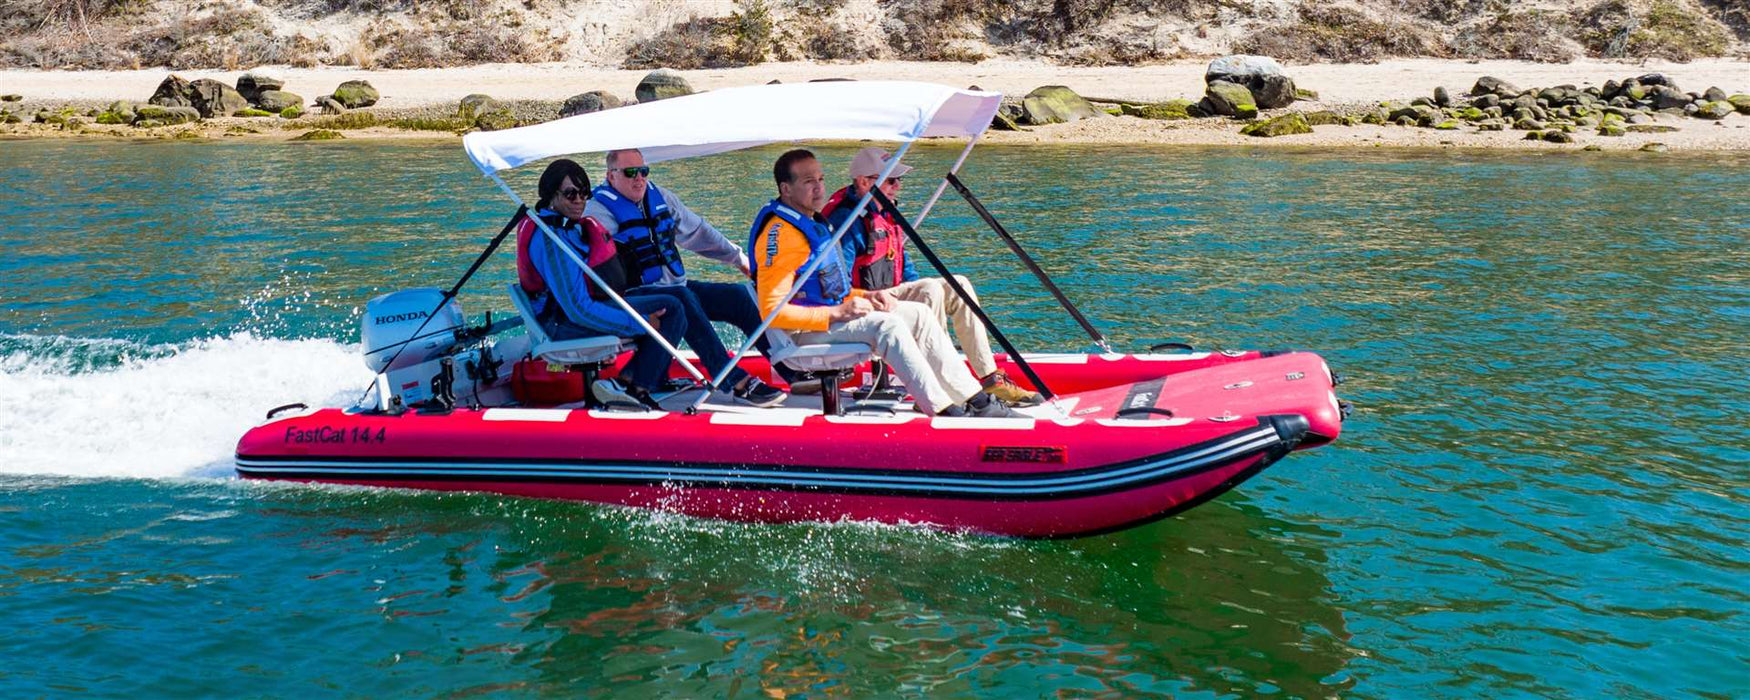 Sea Eagle FastCat14™ Catamaran Inflatable Boat